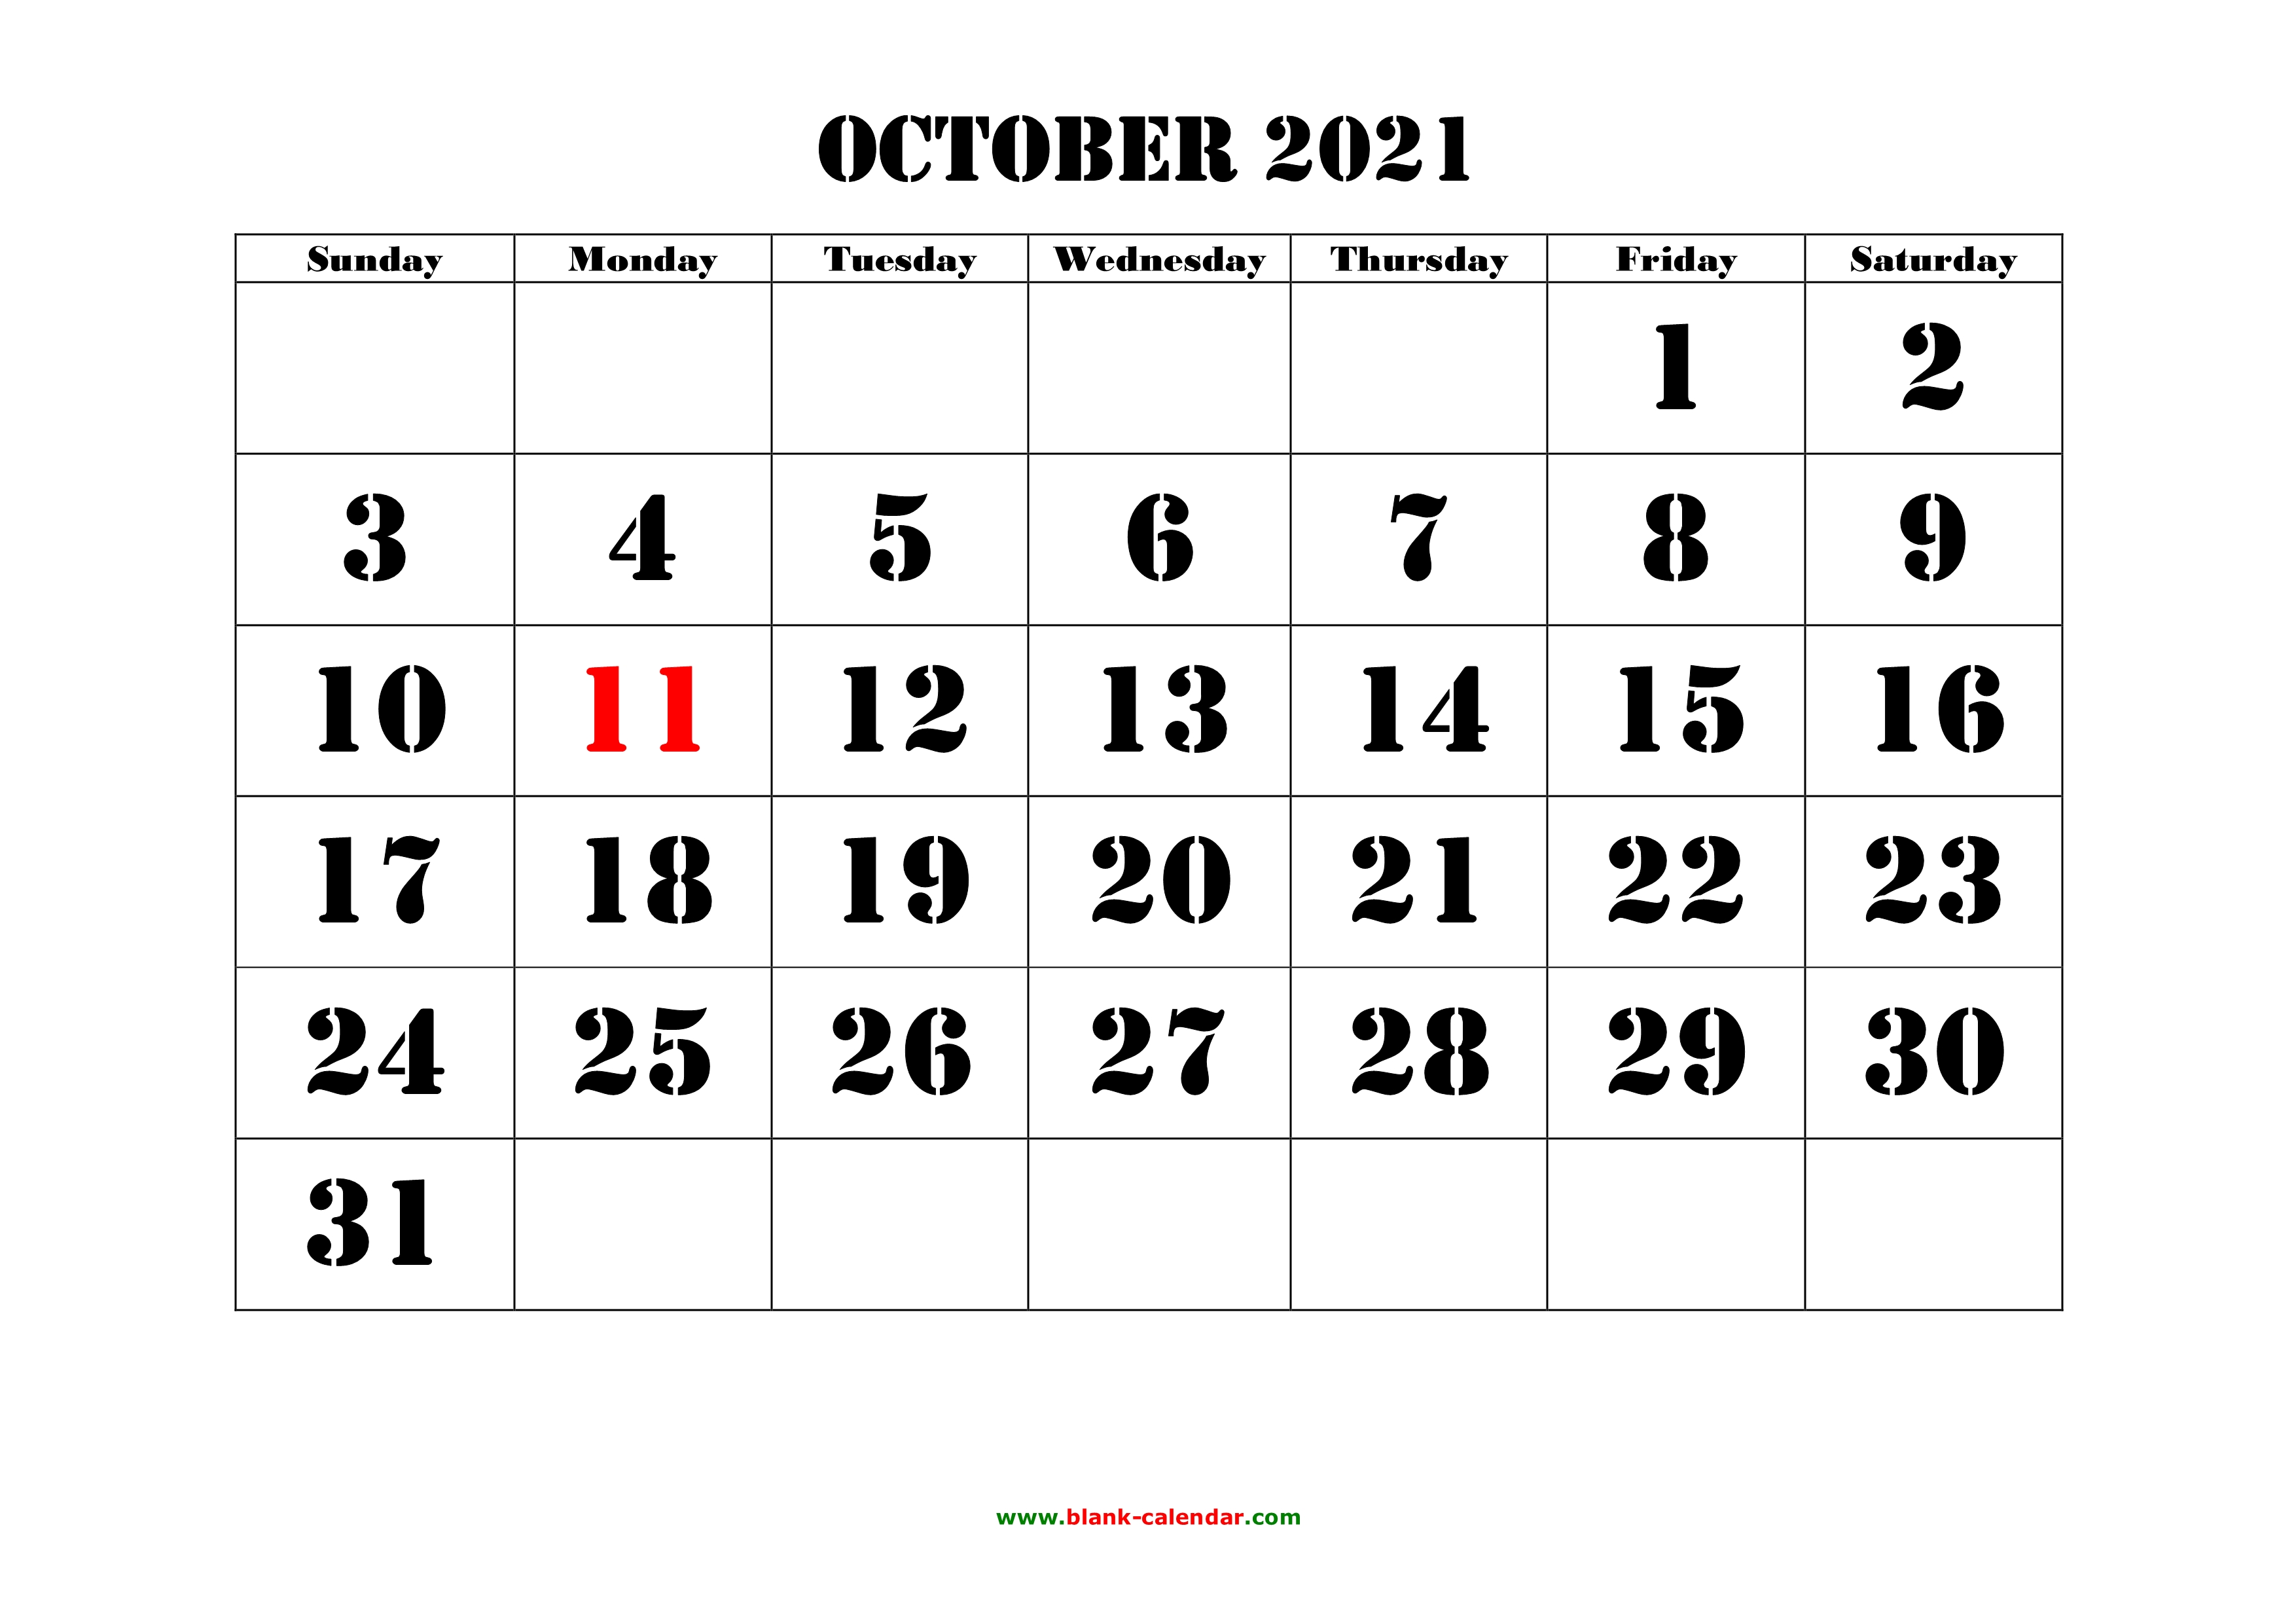 october 2021 calendar free download Free Download Printable October 2021 Calendar Large Font Design Holidays On Red october 2021 calendar free download